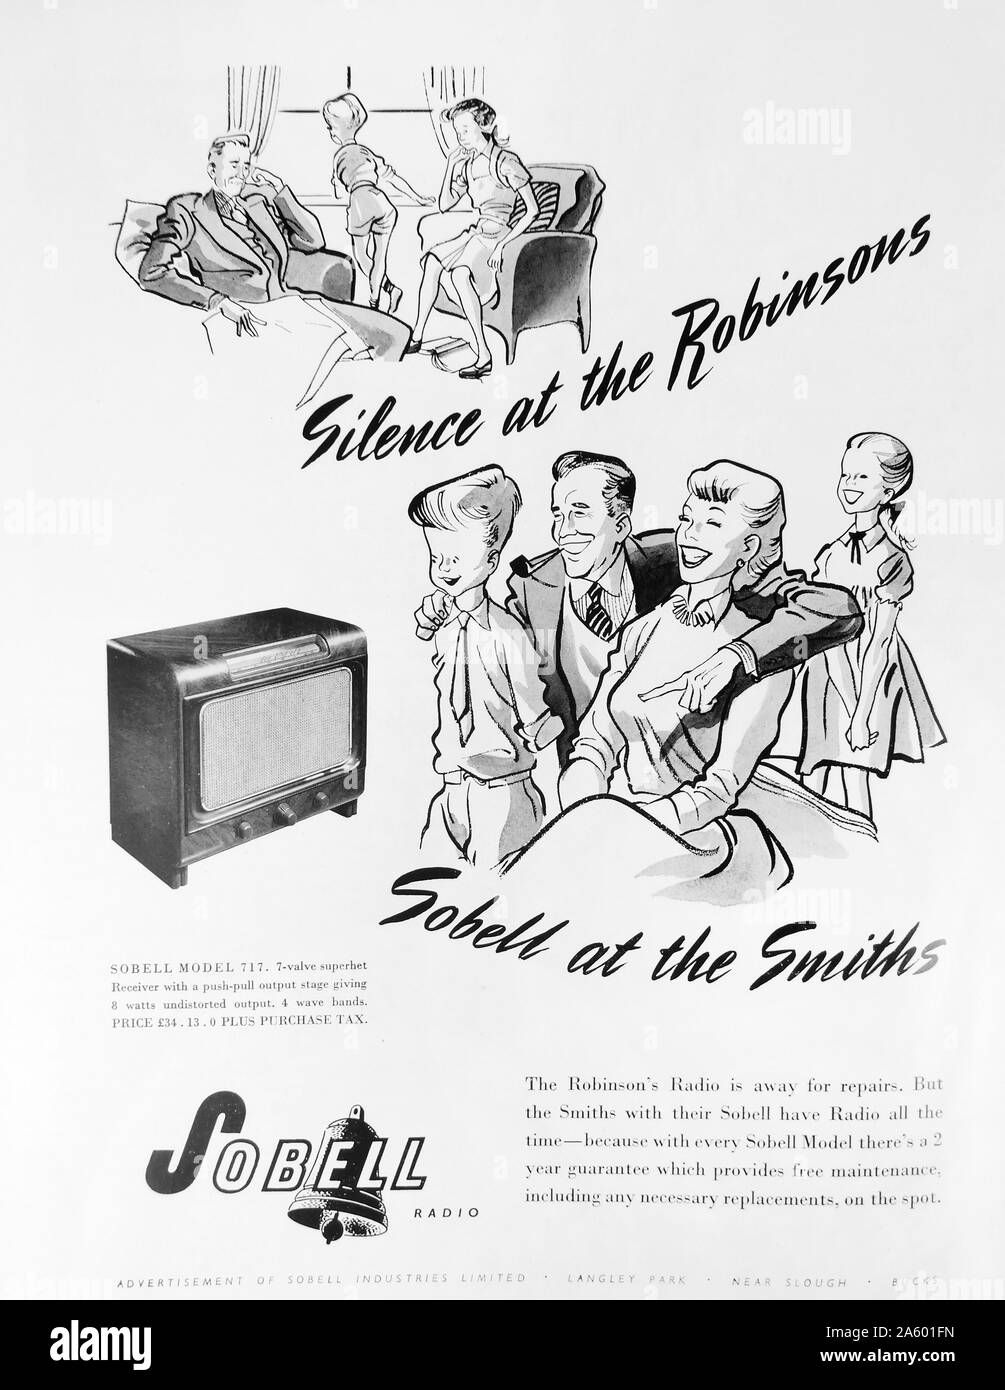 Anzeige für ein Sobell Radio ein Produkt von Radio & Allied Industries Ltd. eine britische Elektronik-Unternehmen, gegründet 1956 aus dem Zusammenschluss der Sobell Gruppe und McMichael Radio Ltd. Stockfoto